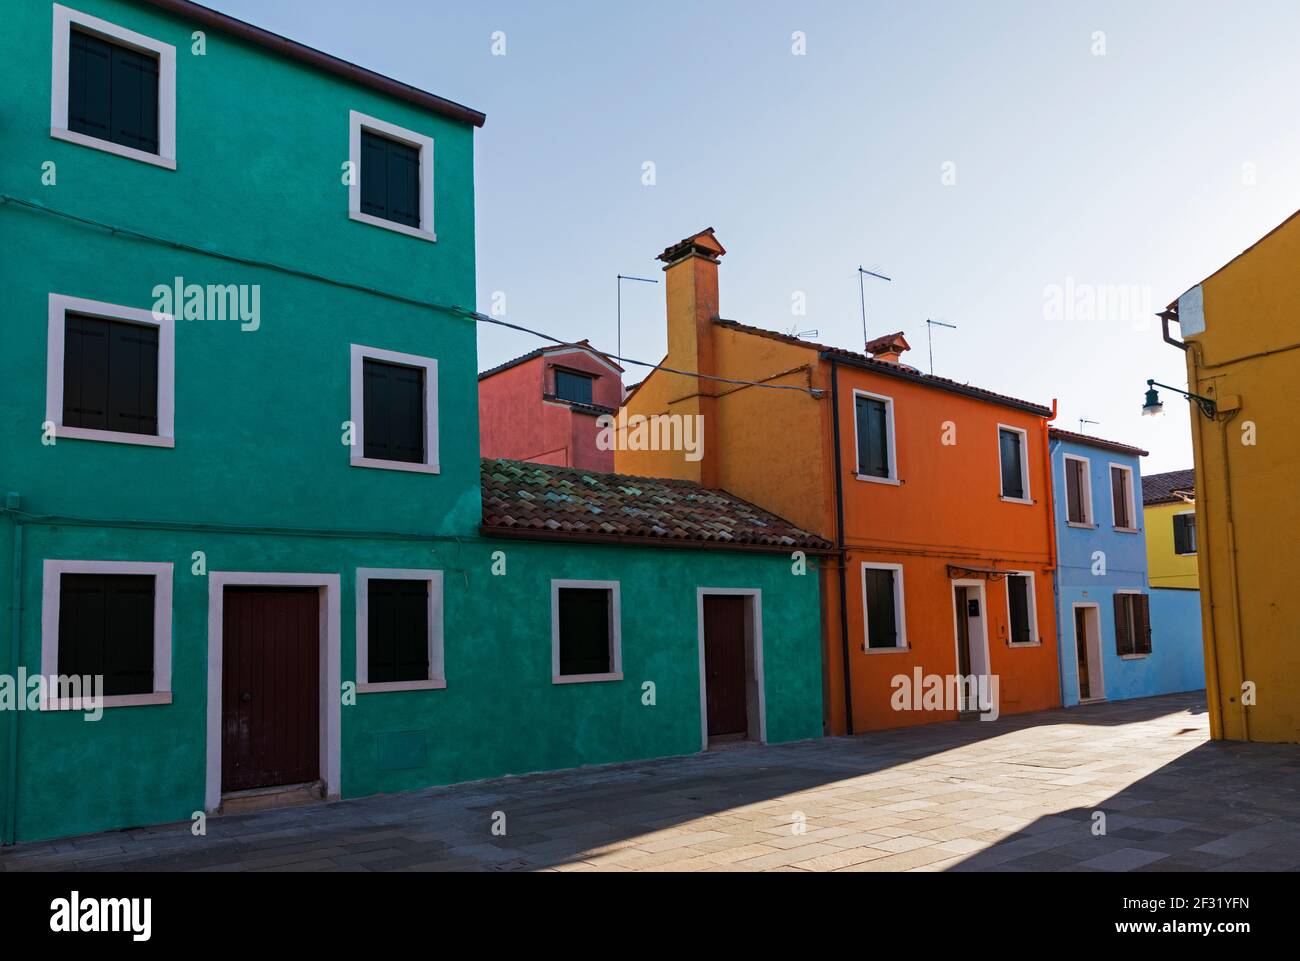 Italy, Venice, Burano, colourful row houses Stock Photo